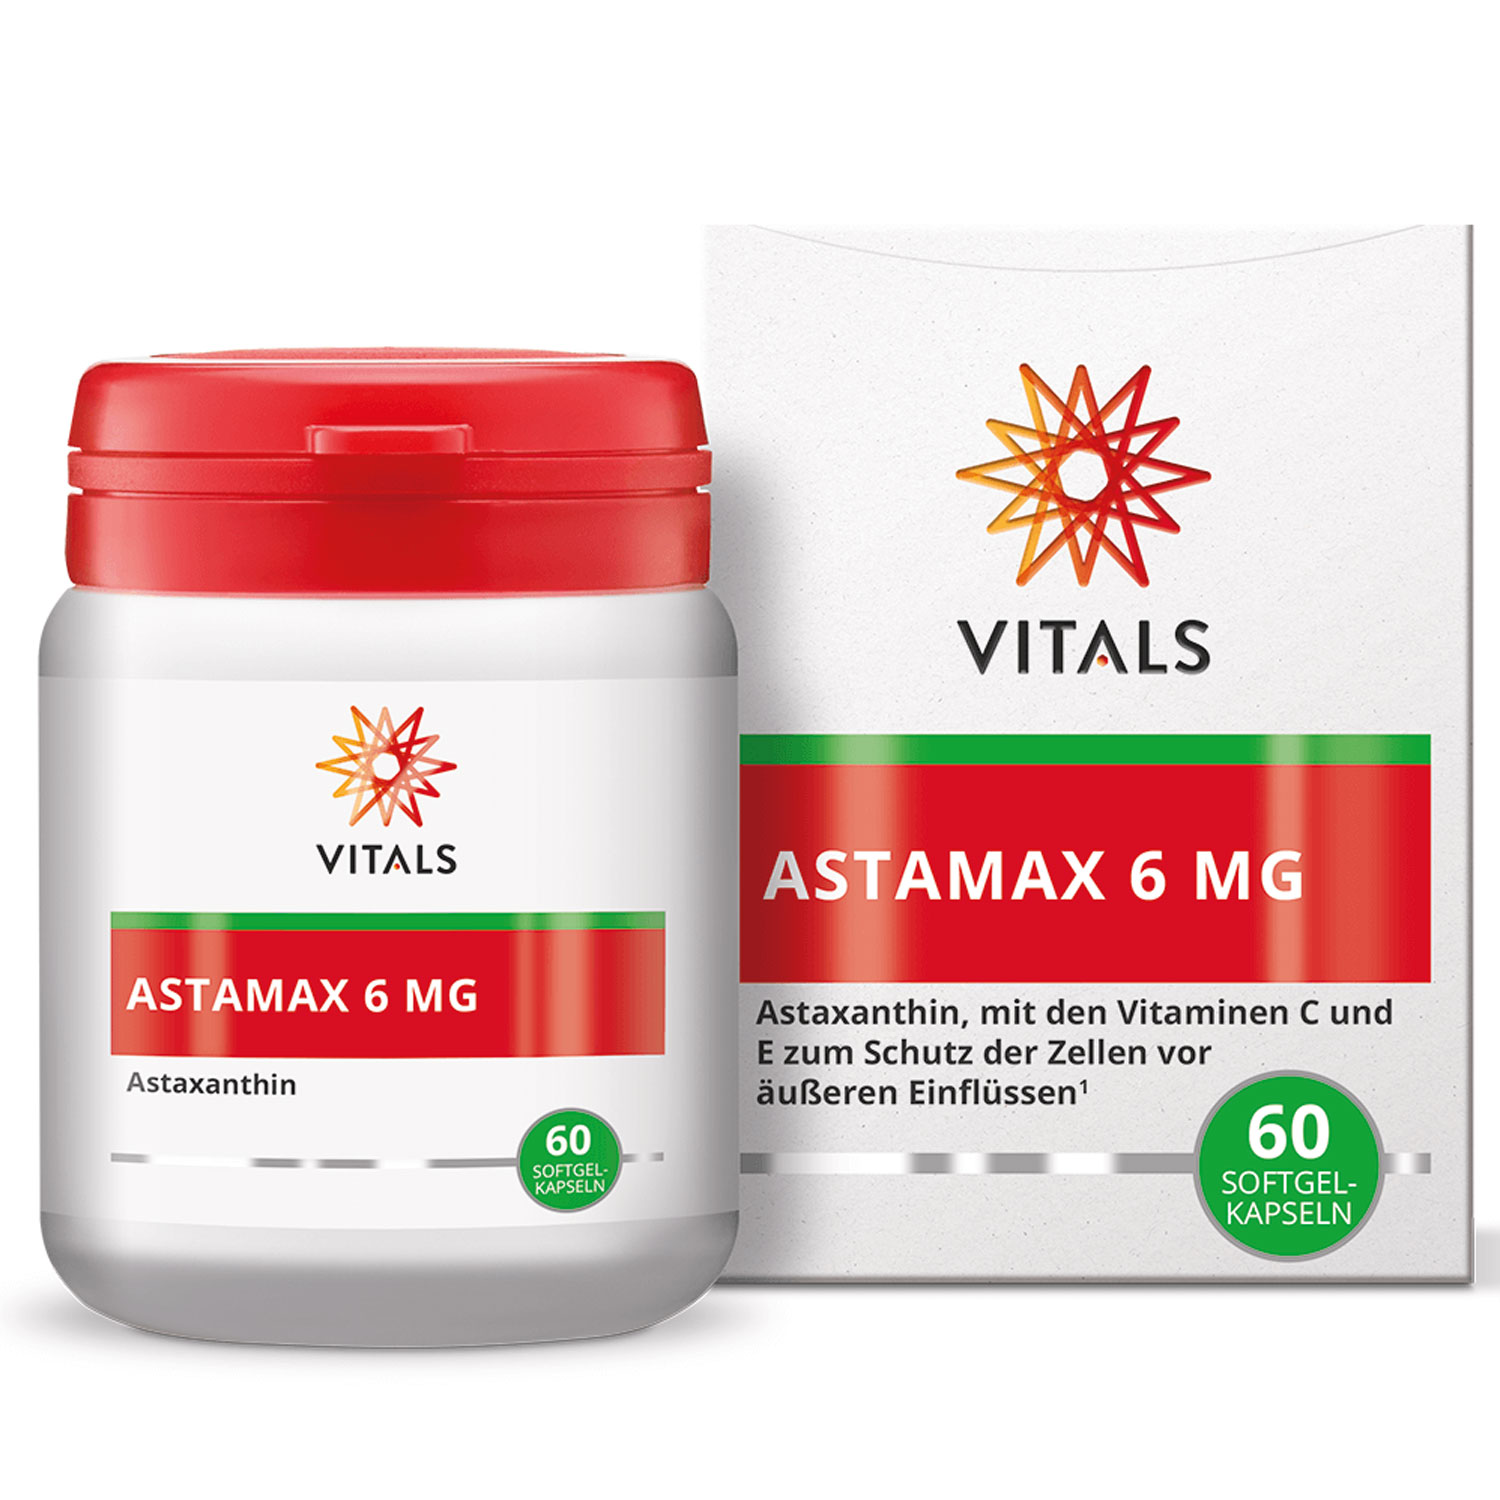 Astamax 6 mg von Vitals - Alternativansicht